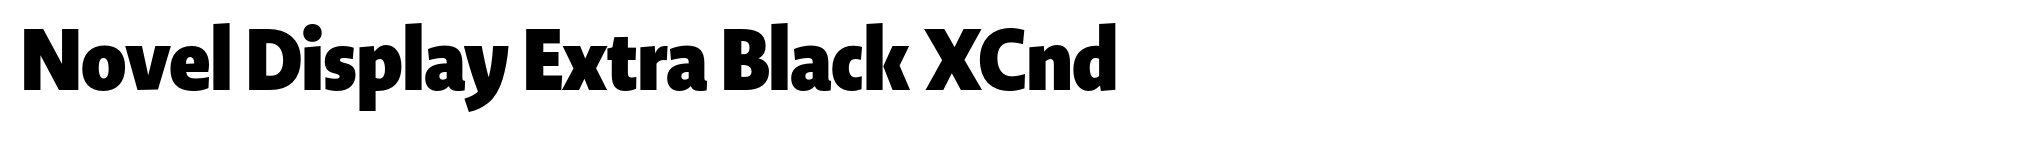 Novel Display Extra Black XCnd image